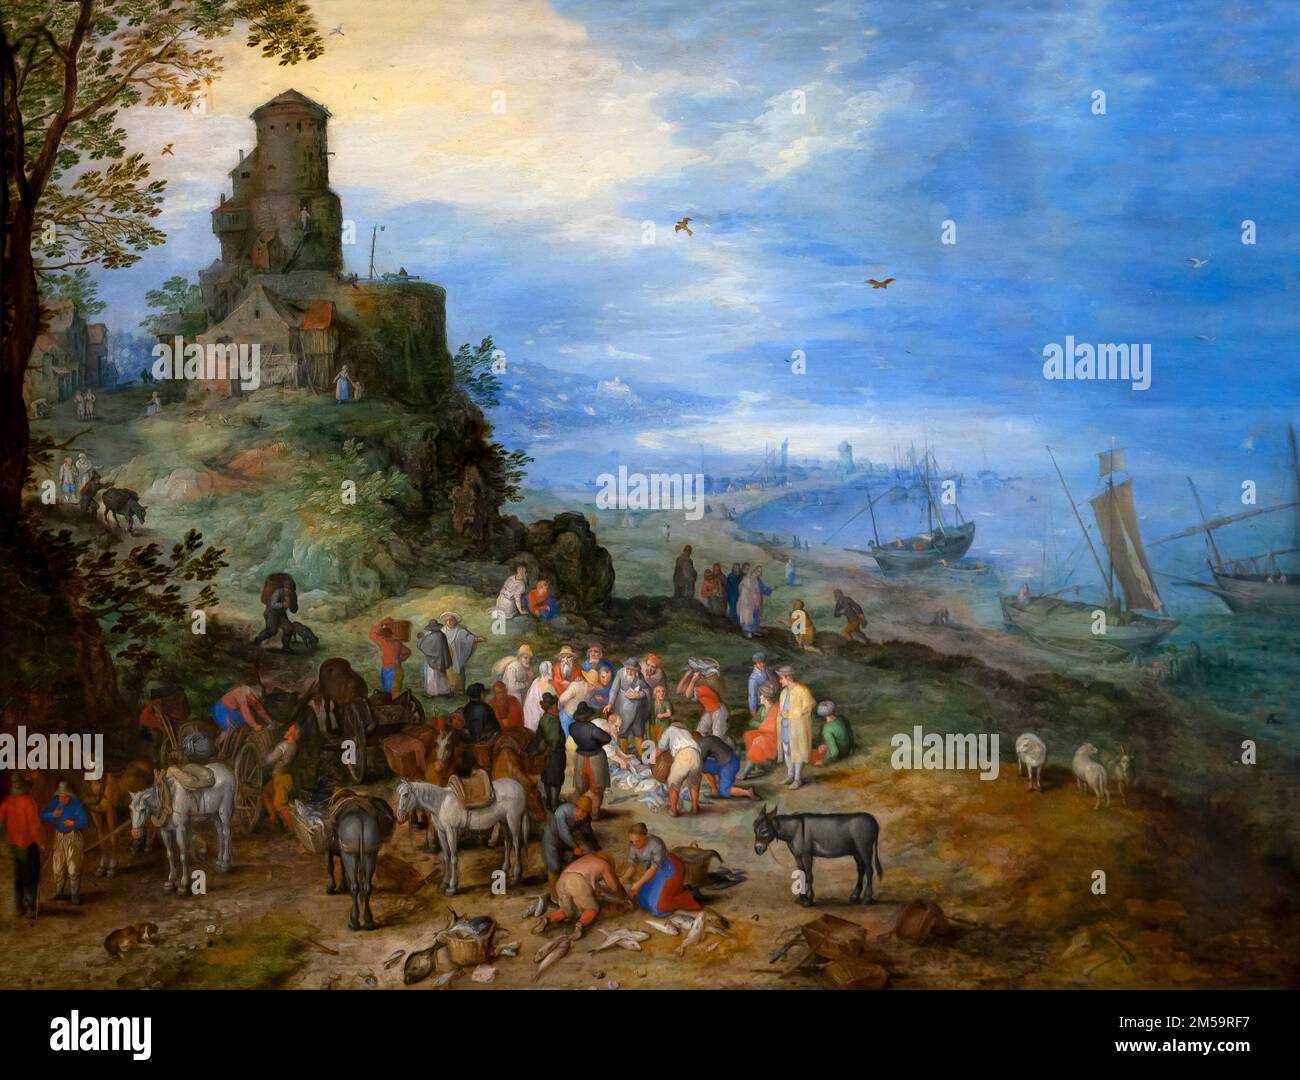 Paesaggio sulla costa, con la chiamata di San Pietro e Sant'Andrea, Jan Brueghel il Vecchio, 1608, Gemaldegalerie Alte Meister, Dresda, Germania, Foto Stock